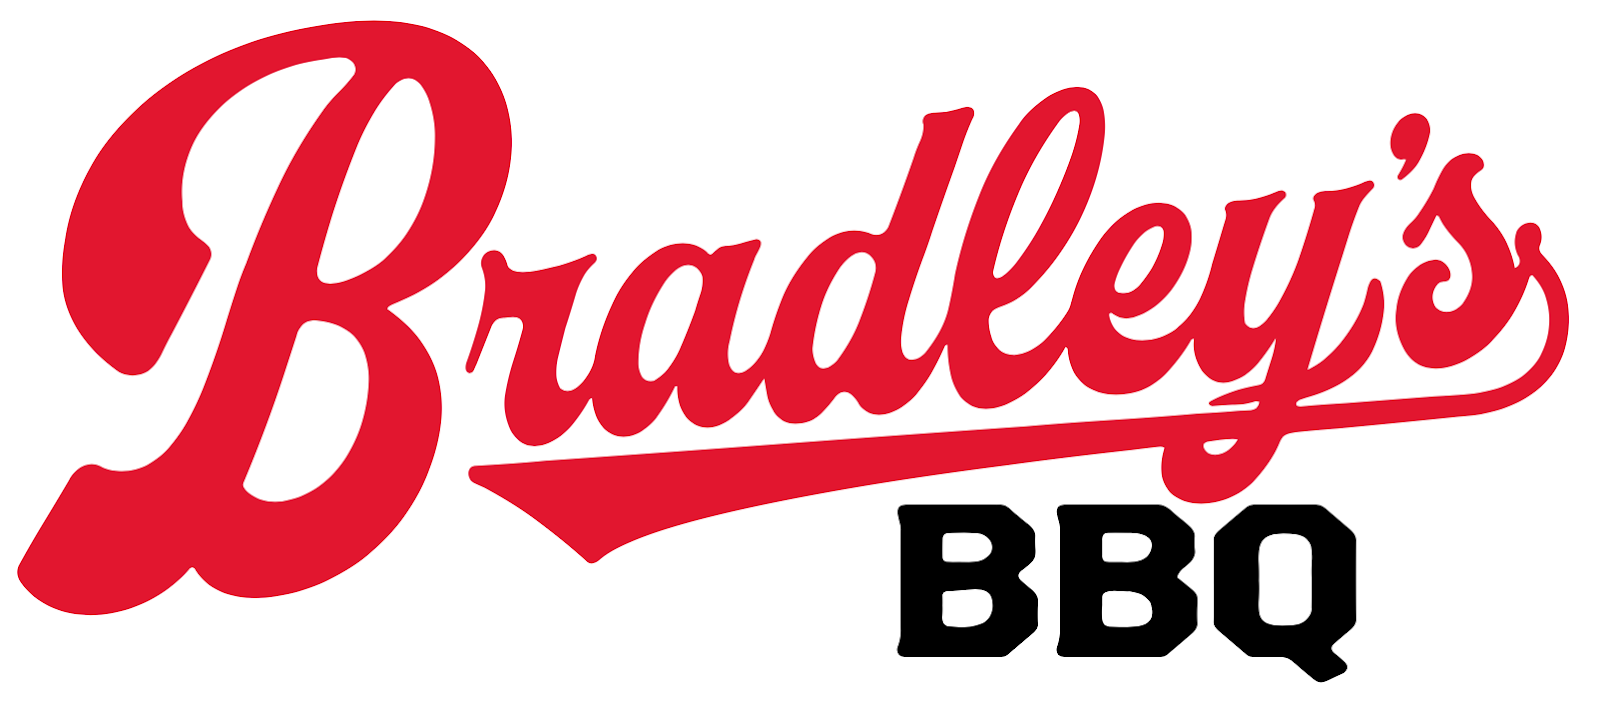 Bradley's BBQ